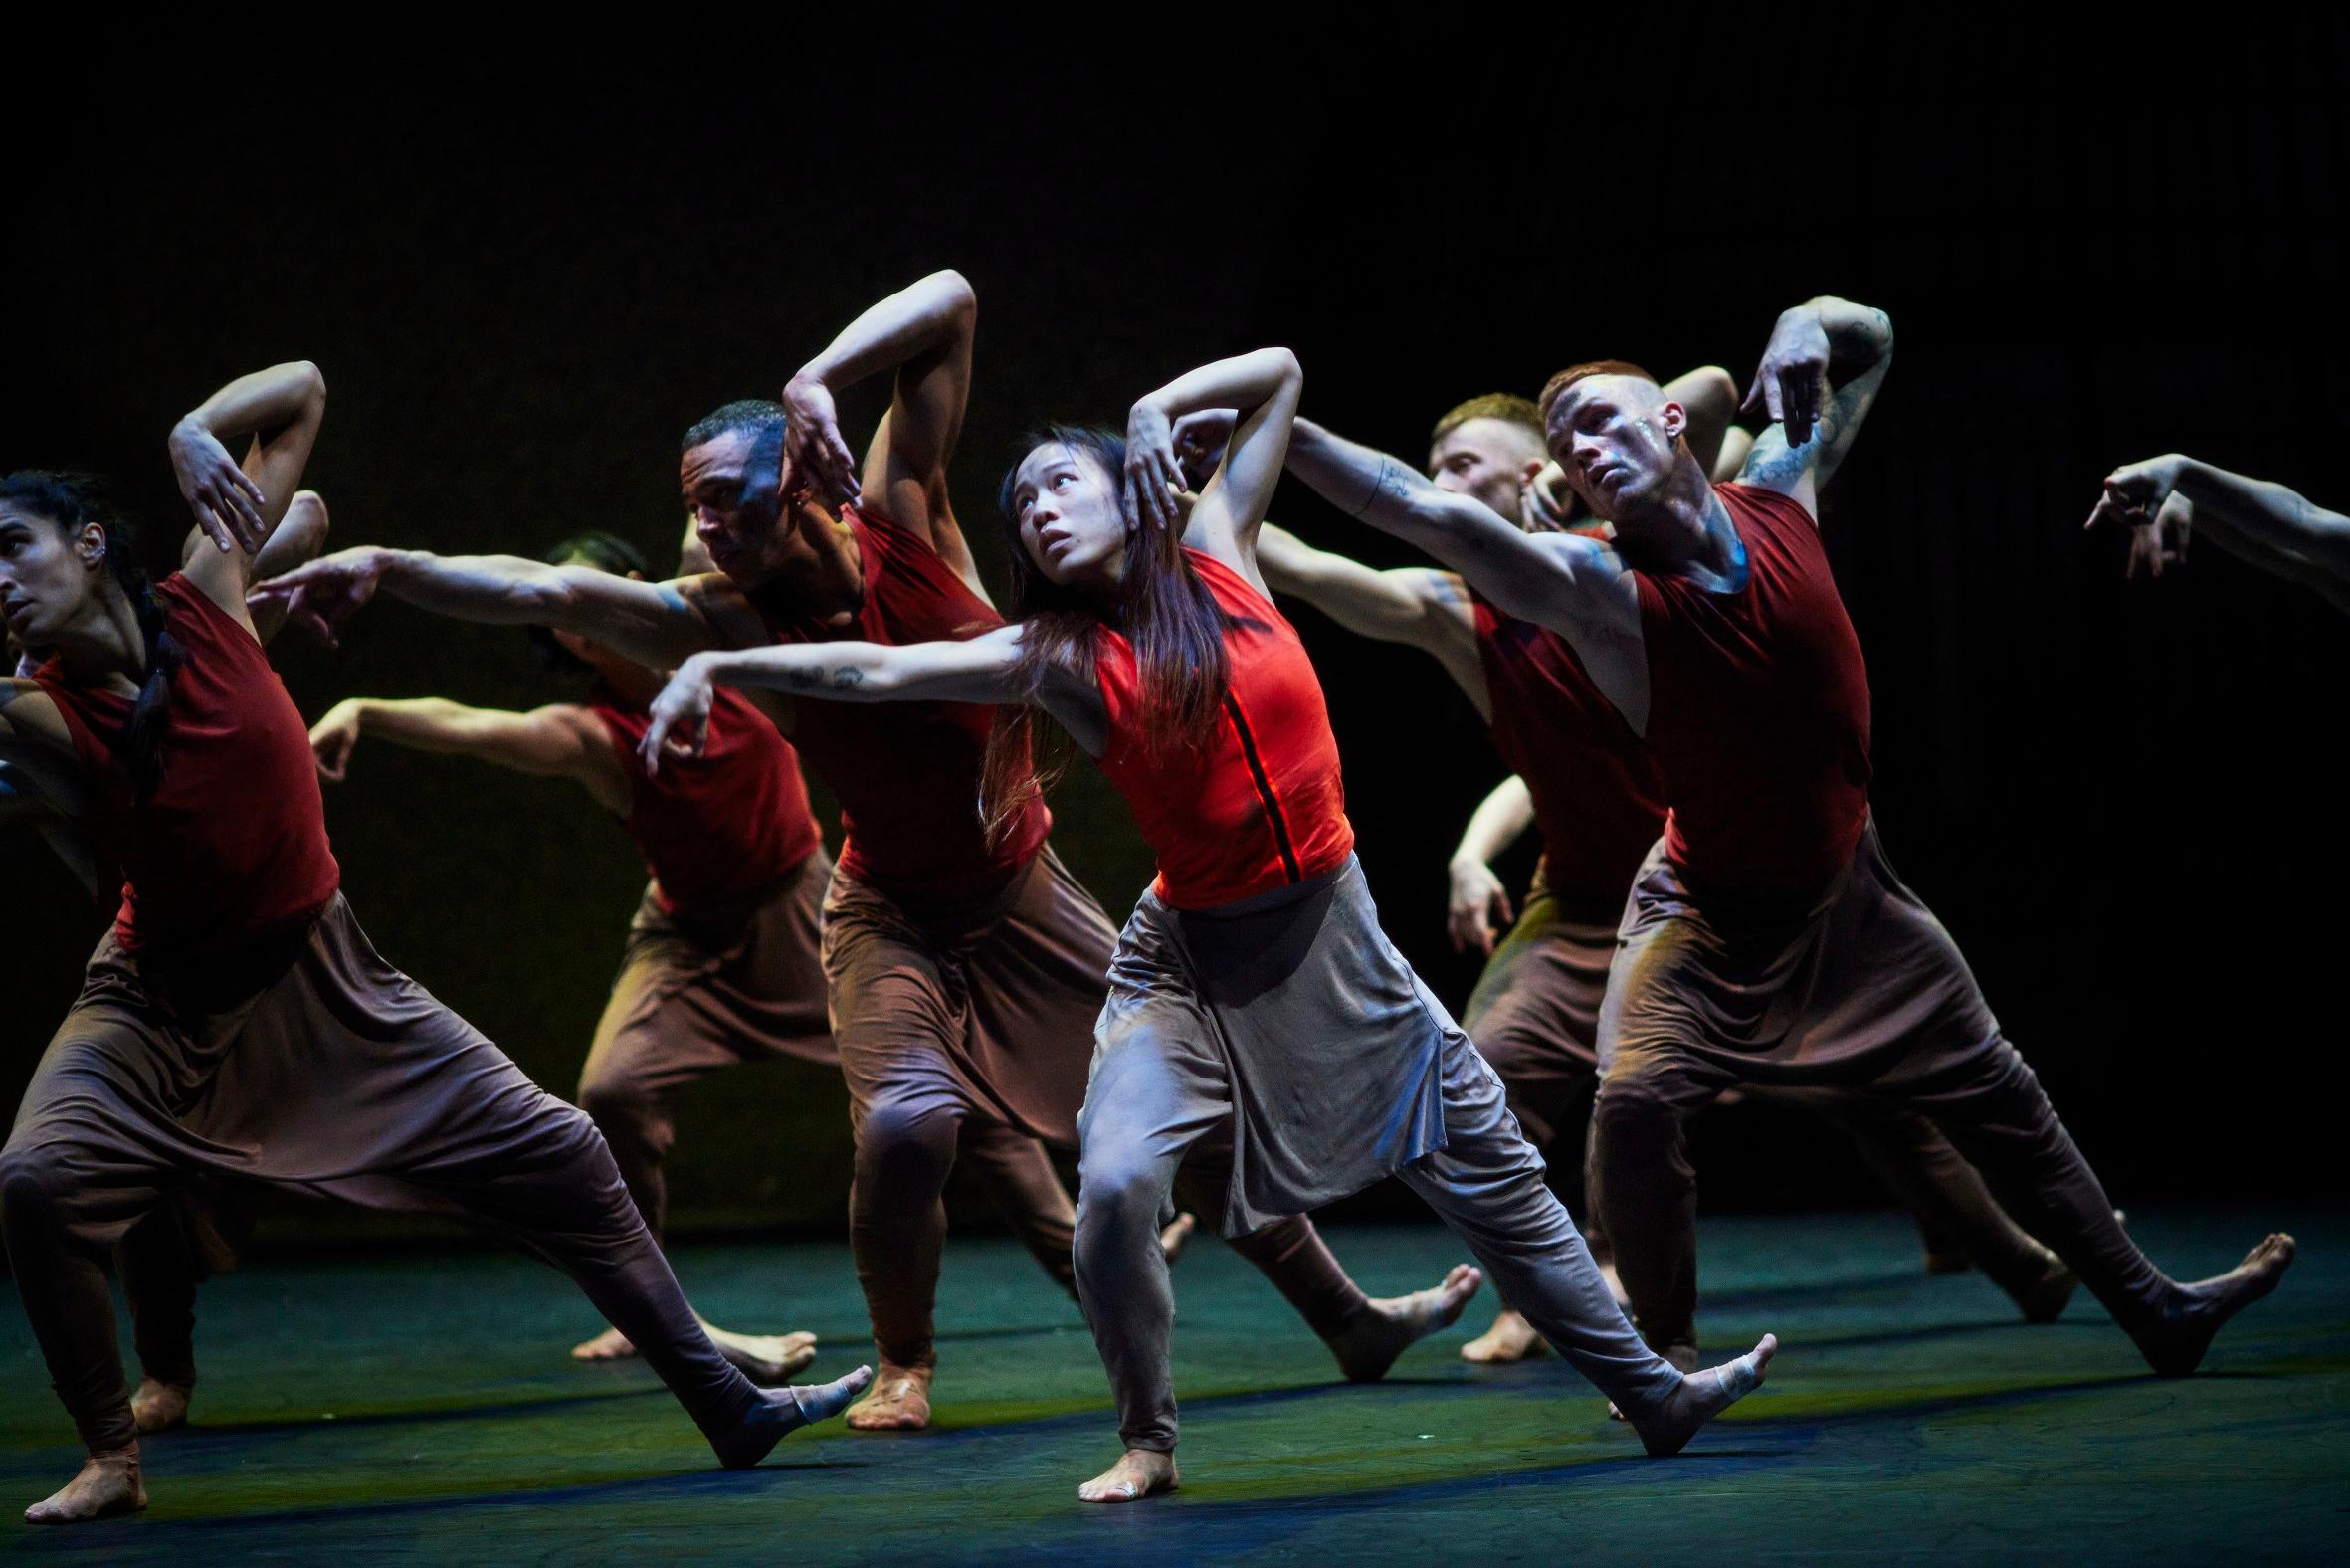 「新视野艺术节」呈献顶尖舞蹈节目《丛林奇谭》再造版，将于十一月十一日及十二日在香港文化中心大剧院上演。舞者以舞蹈方式叙事，让观众反思大自然于气候变化的反噬，掷地有声。（图片来源：Ambra Vernuccio）
